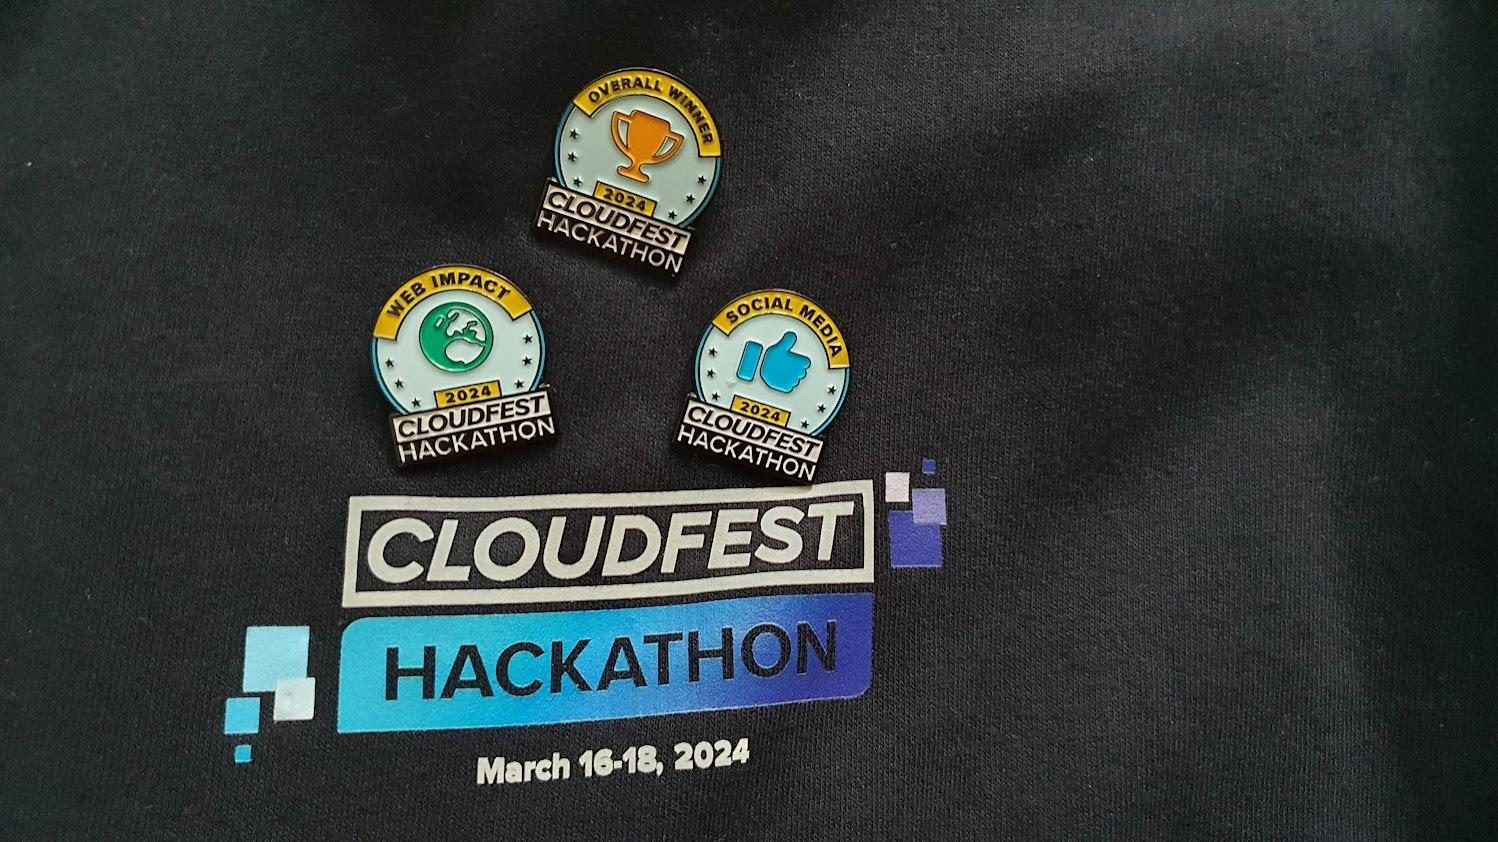 Hackathon award pins